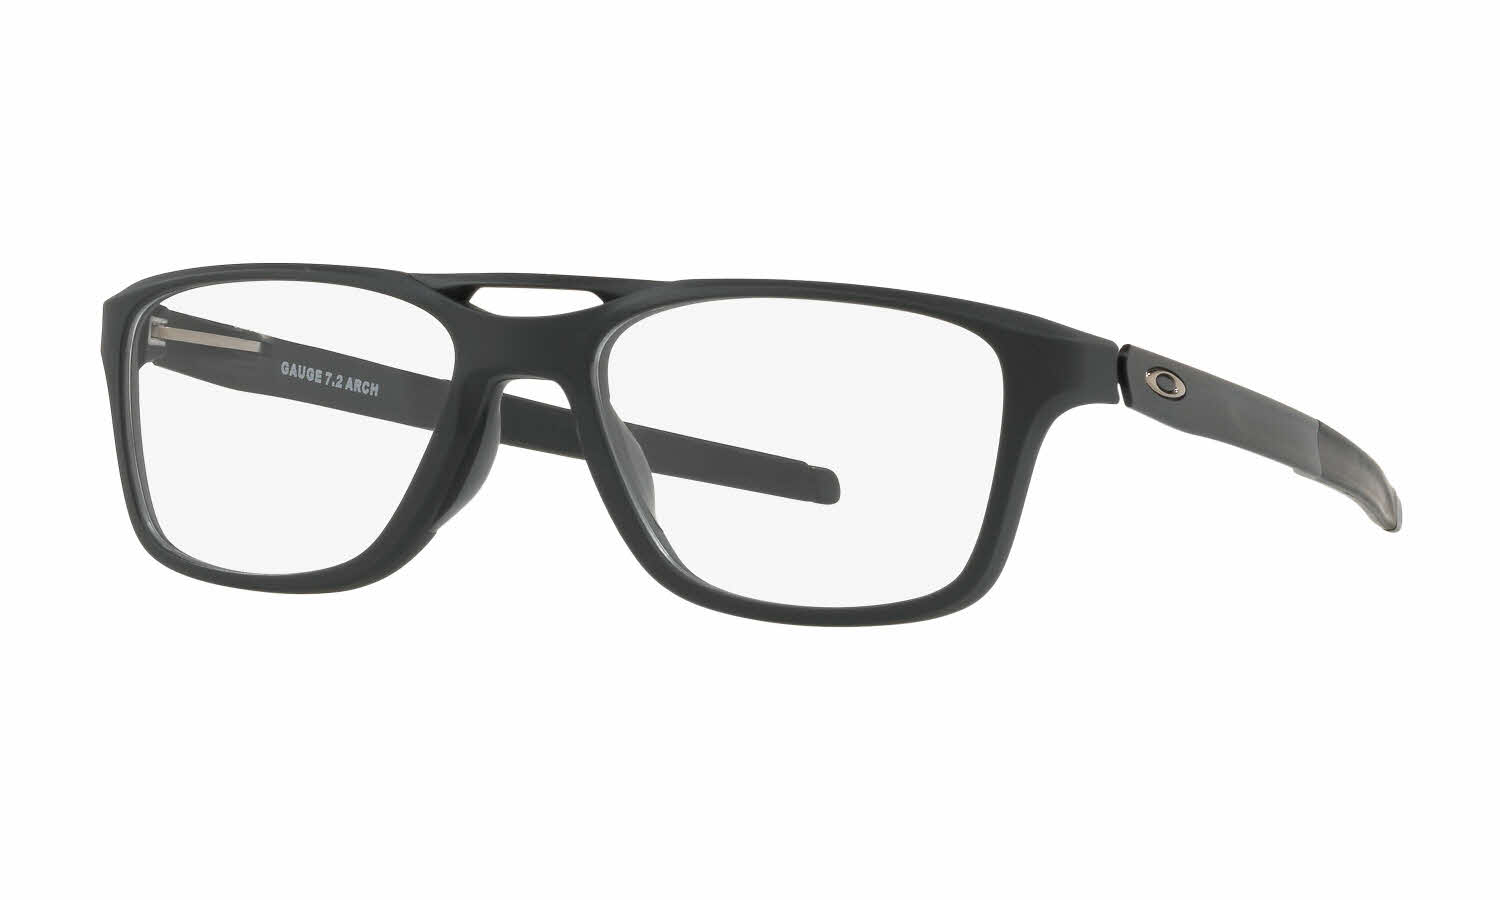 Oakley Gauge 7.2 Arch (TruBridge) Eyeglasses